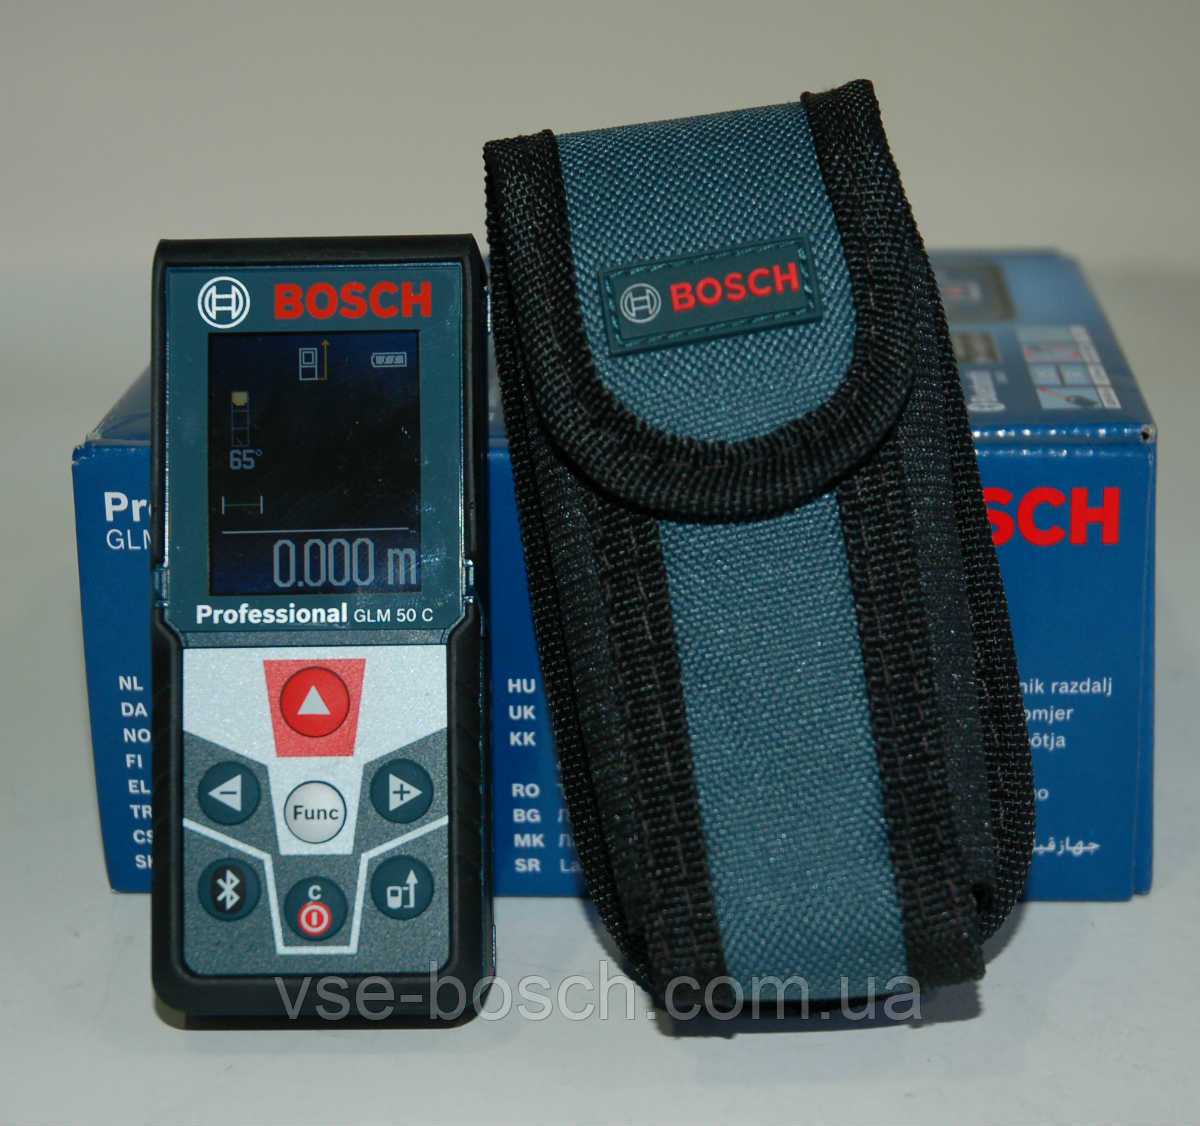 Bosch GLM 80 Professional - короткий но максимально информативный обзор Для большего удобства добавлены характеристики отзывы и видео